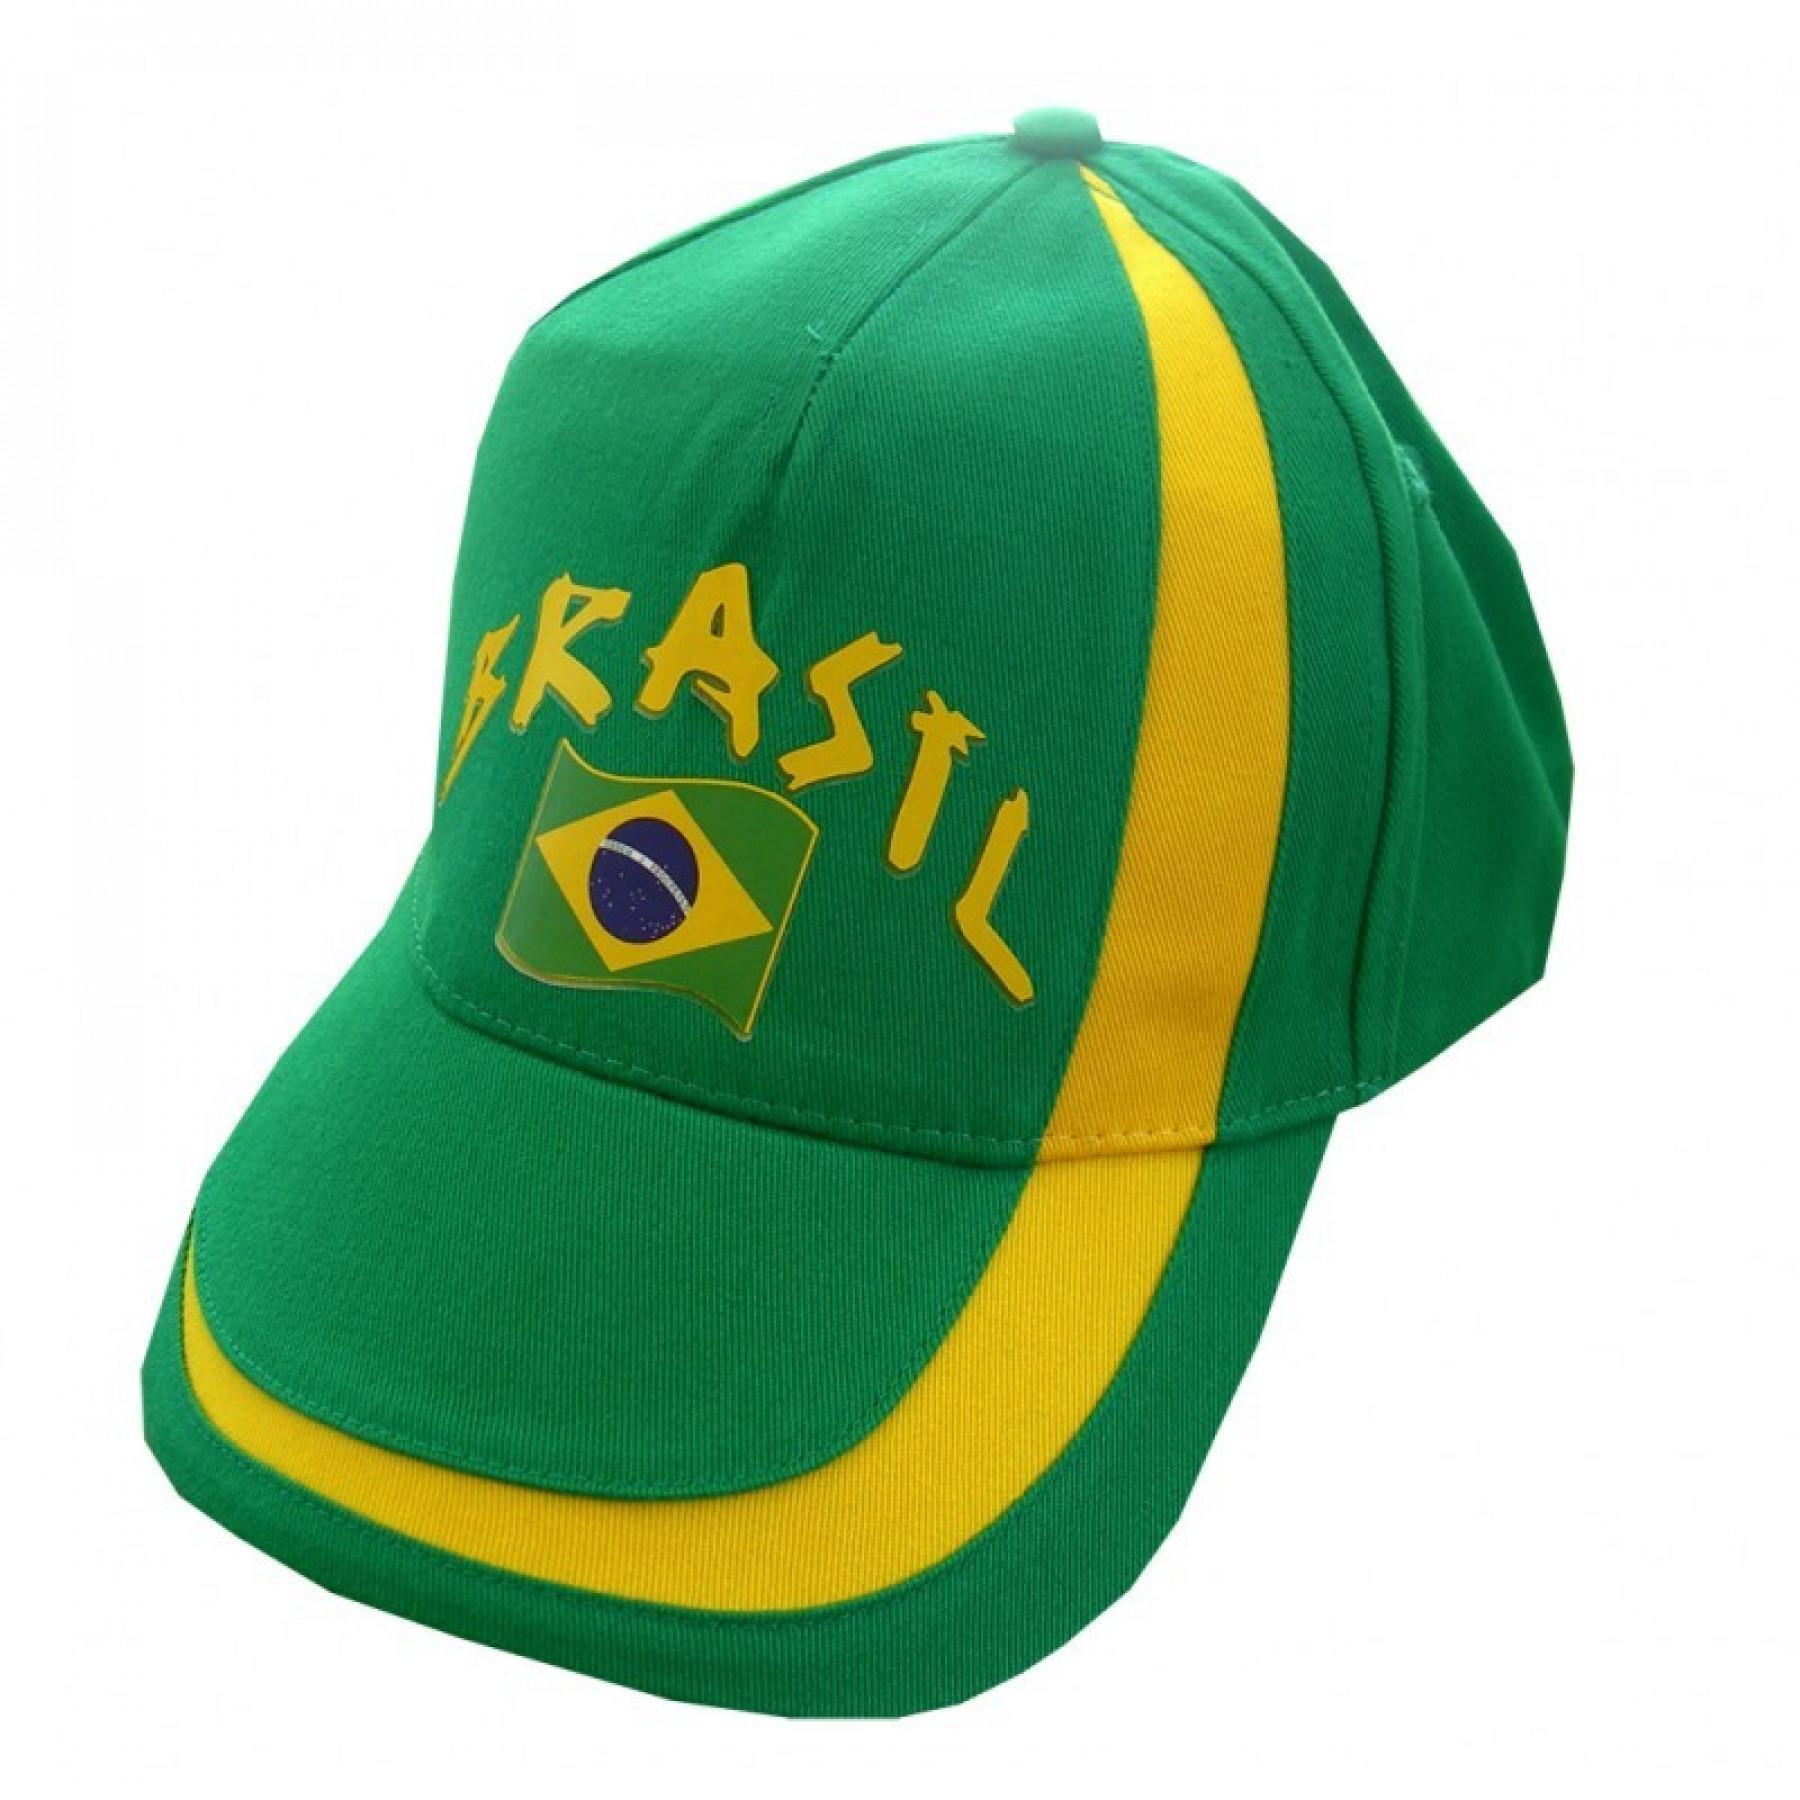 Cap Supporter Shop Brésil World Cup 2014